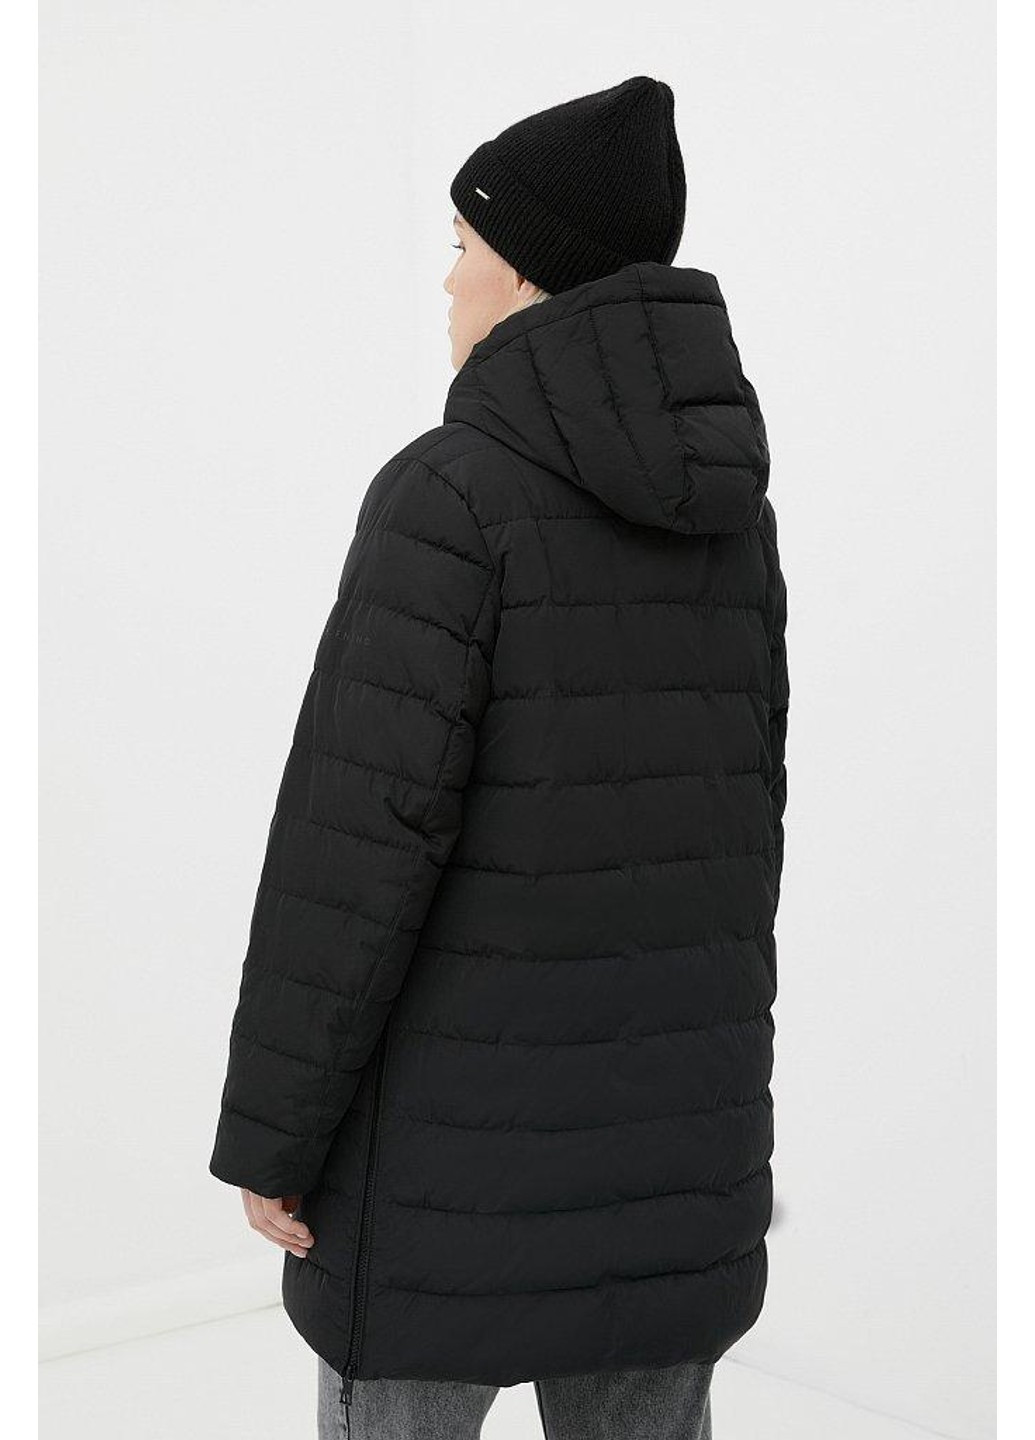 Черная зимняя куртка fwb160133-200 Finn Flare